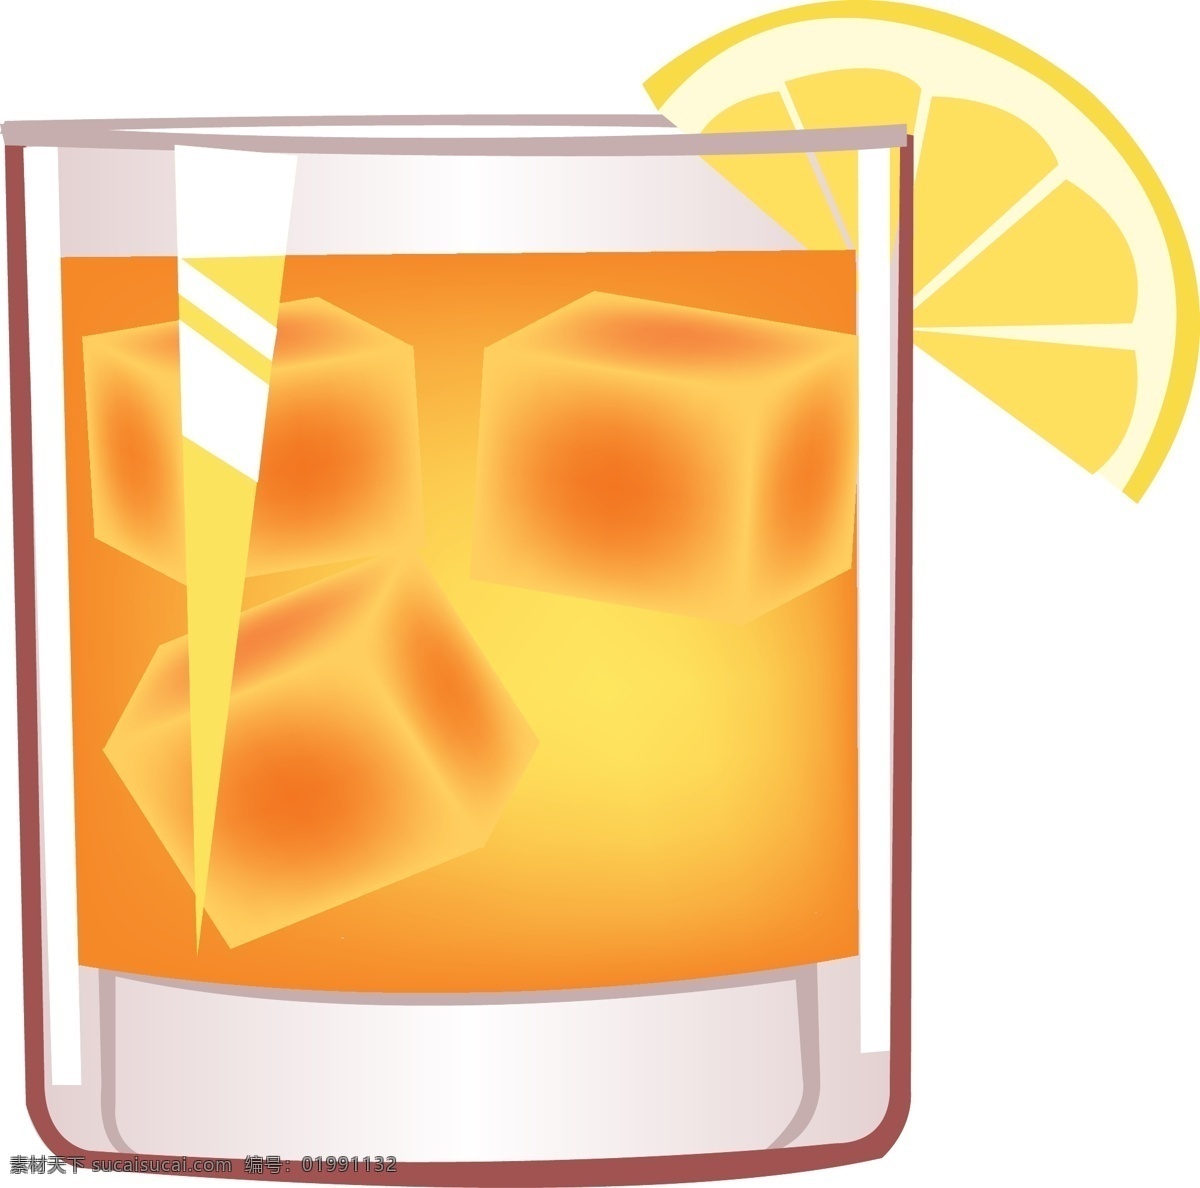 矢量橙汁元素 矢量 冰块 橙汁 ai元素 免扣元素